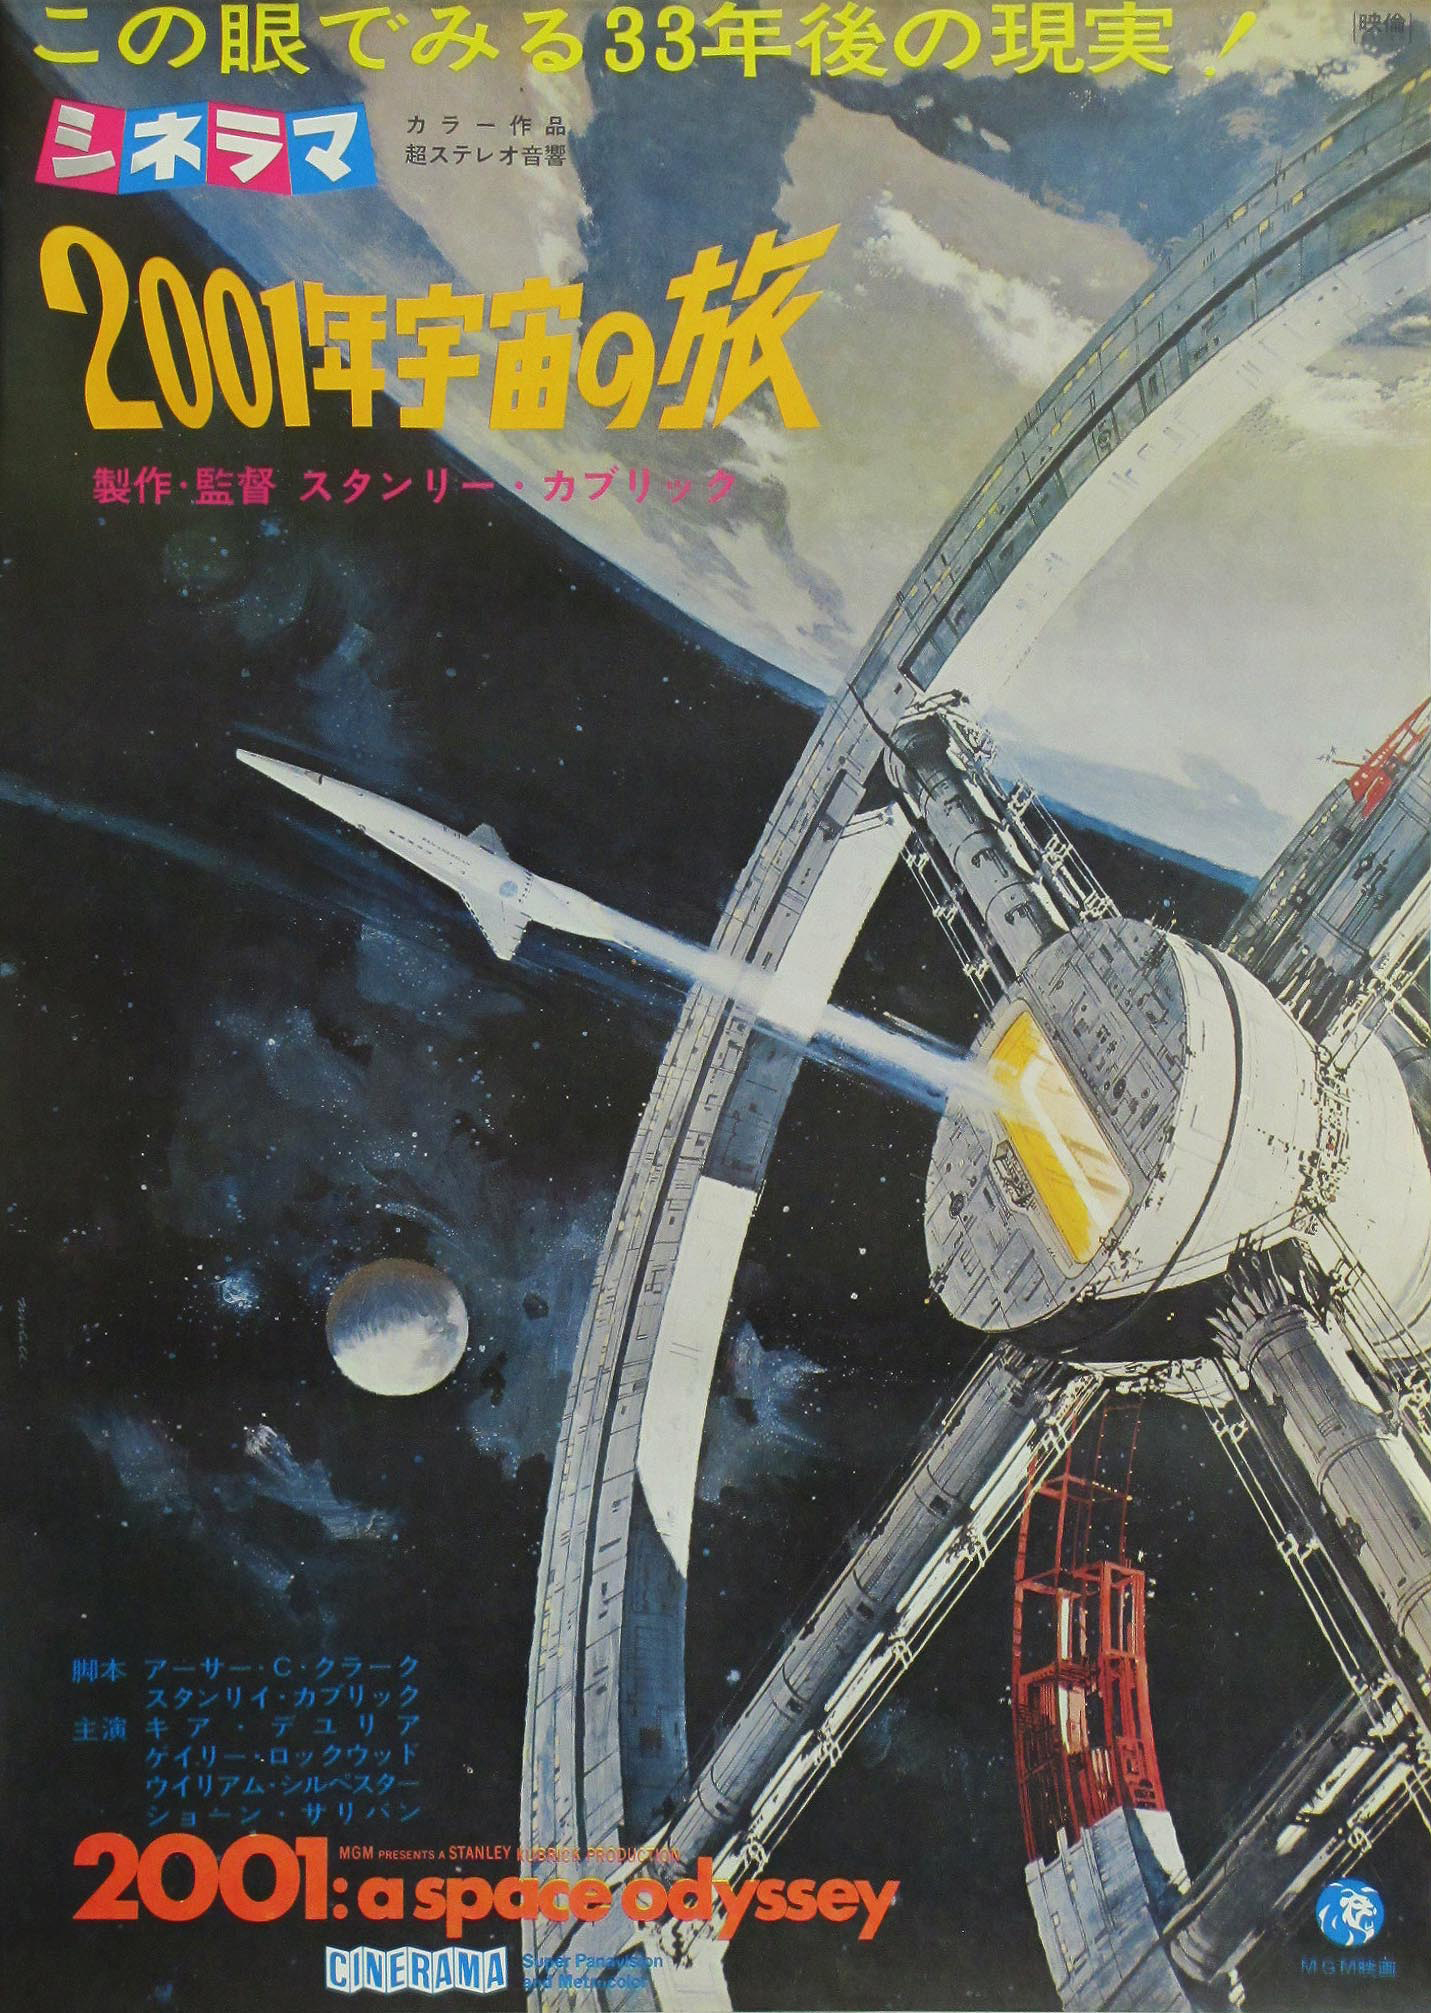 2001 space odyssey movie